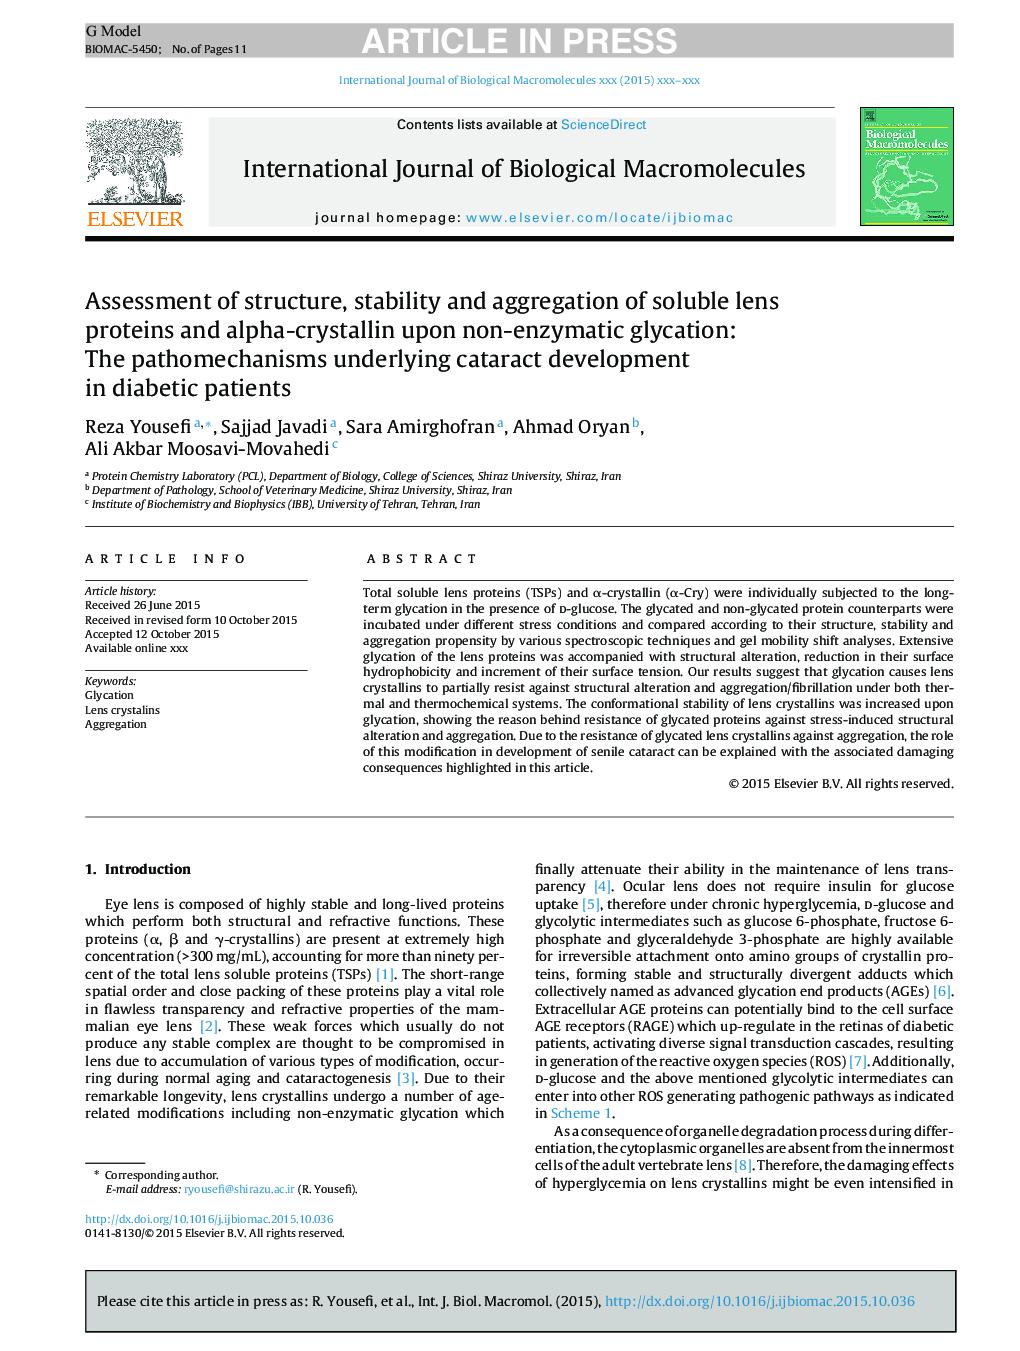 ارزیابی ساختار، ثبات و تجمع پروتئین های لنز محلول و آلفا کریستالین بر غلظت غیر آنزیمی: روش های پاتولوژیک زیر در توسعه کاتاراکت در بیماران دیابتی 